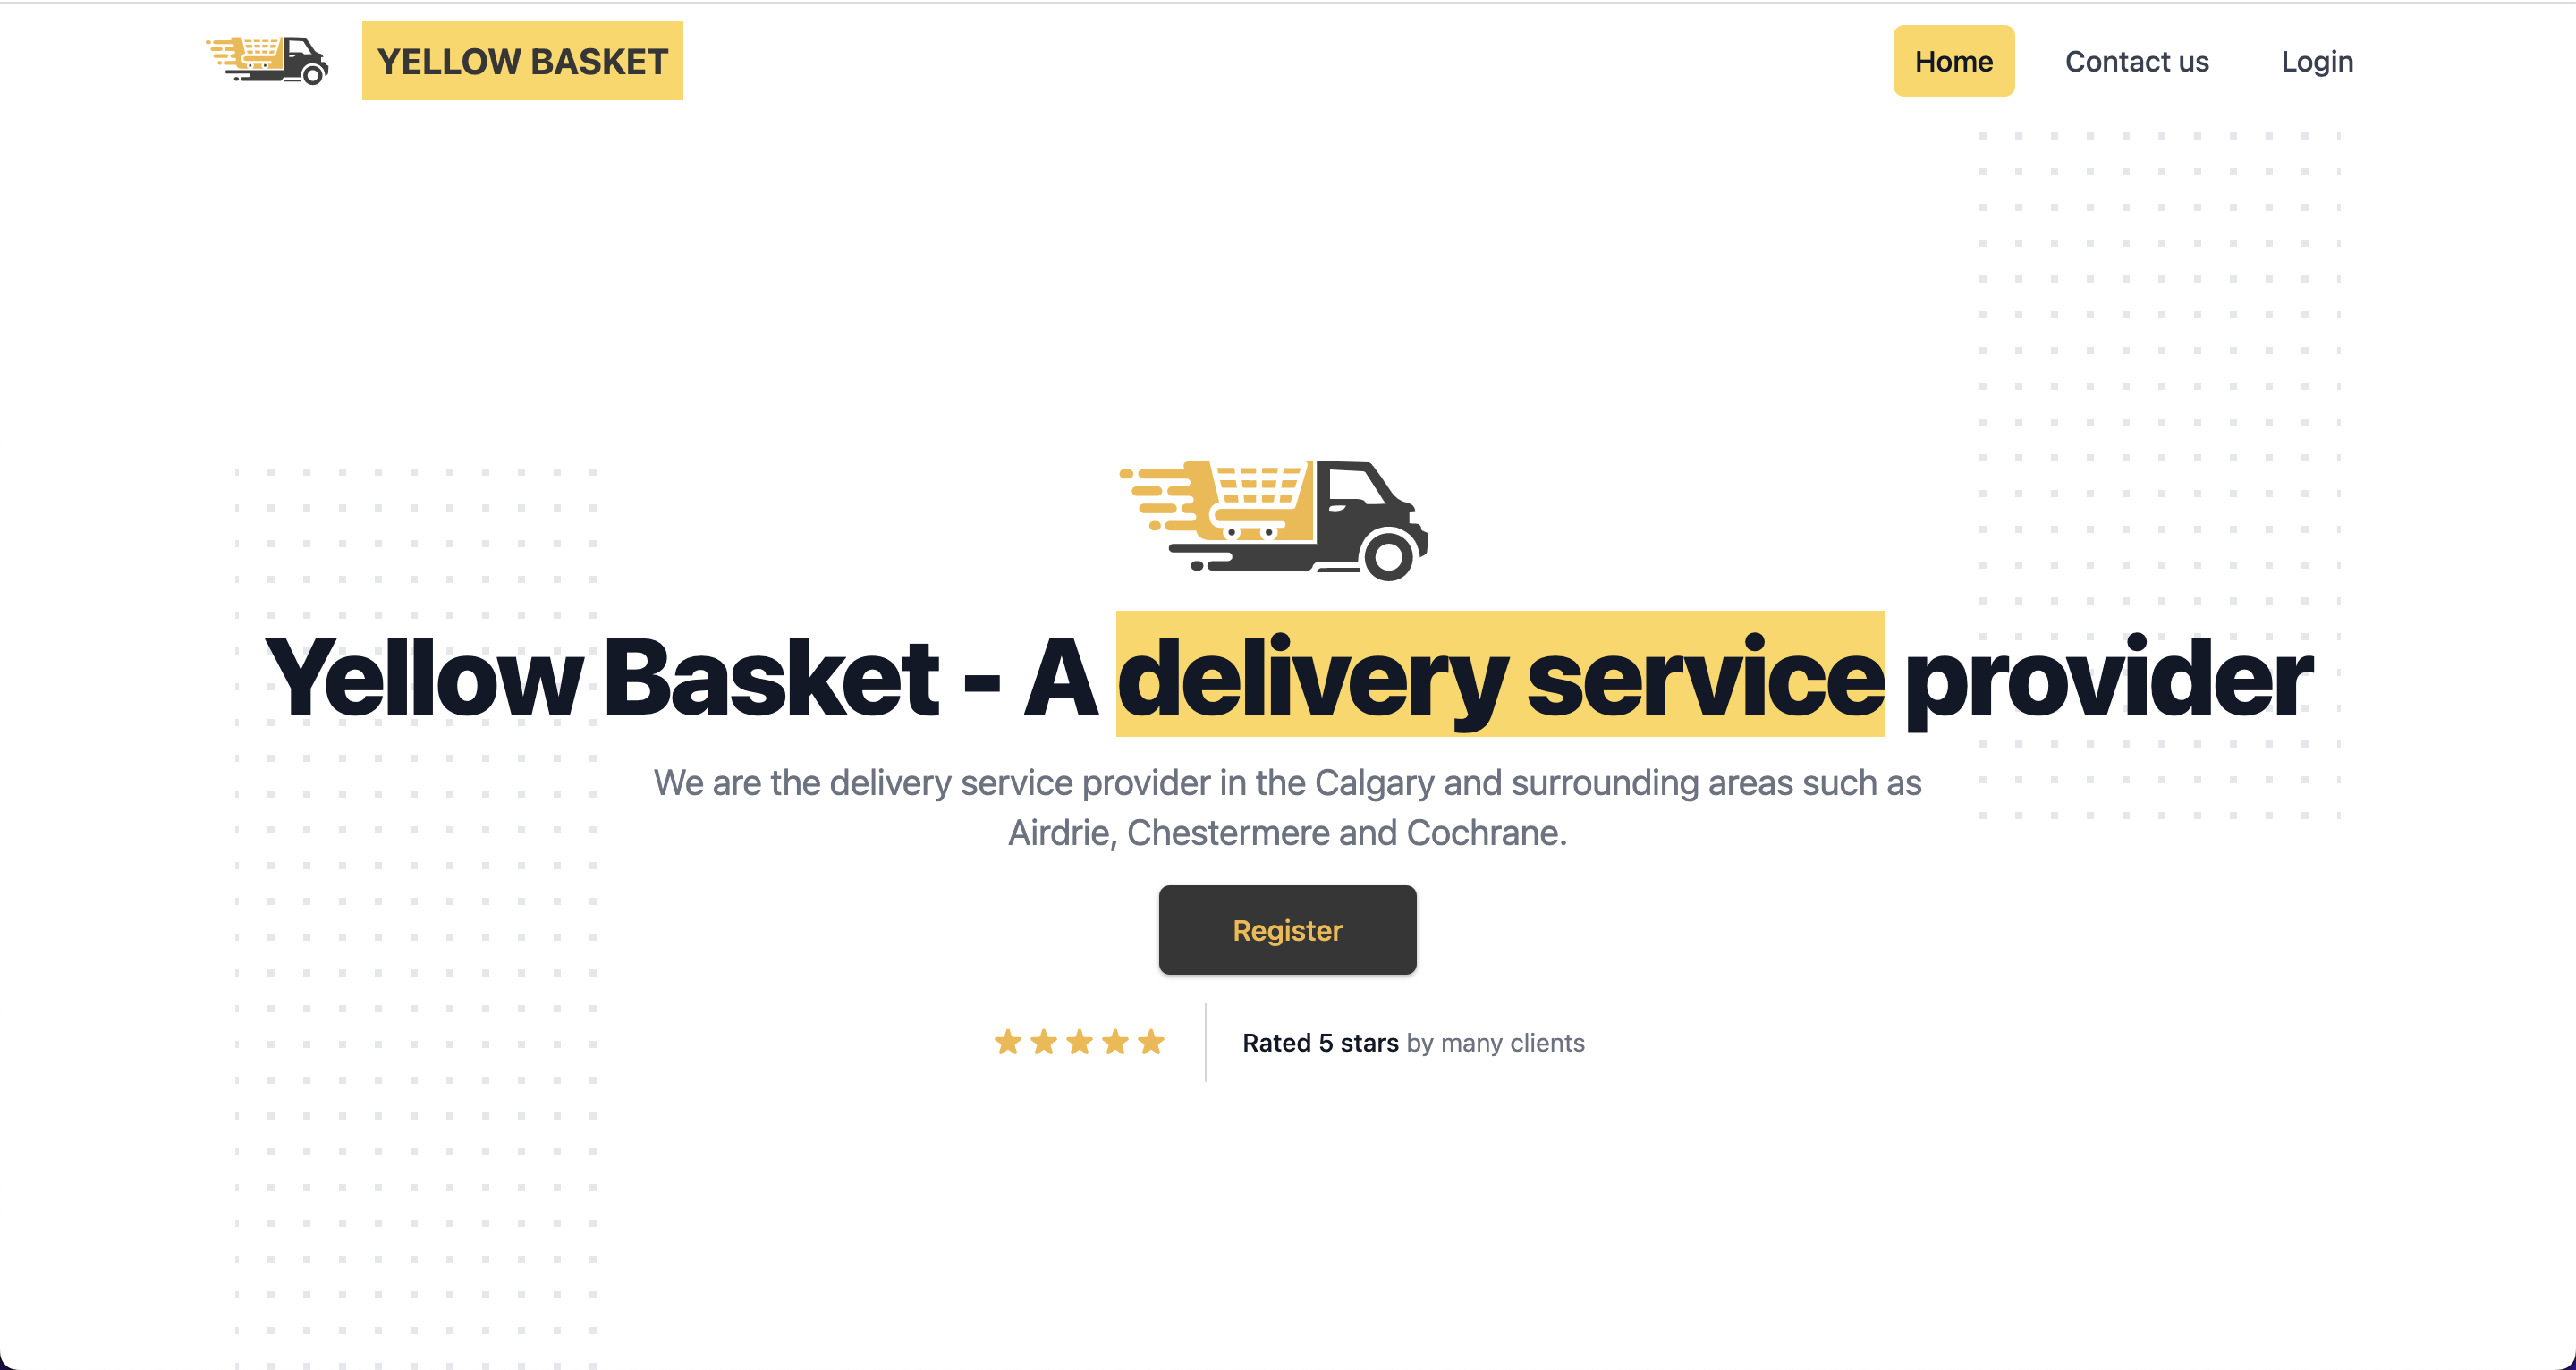 Yellow basket website